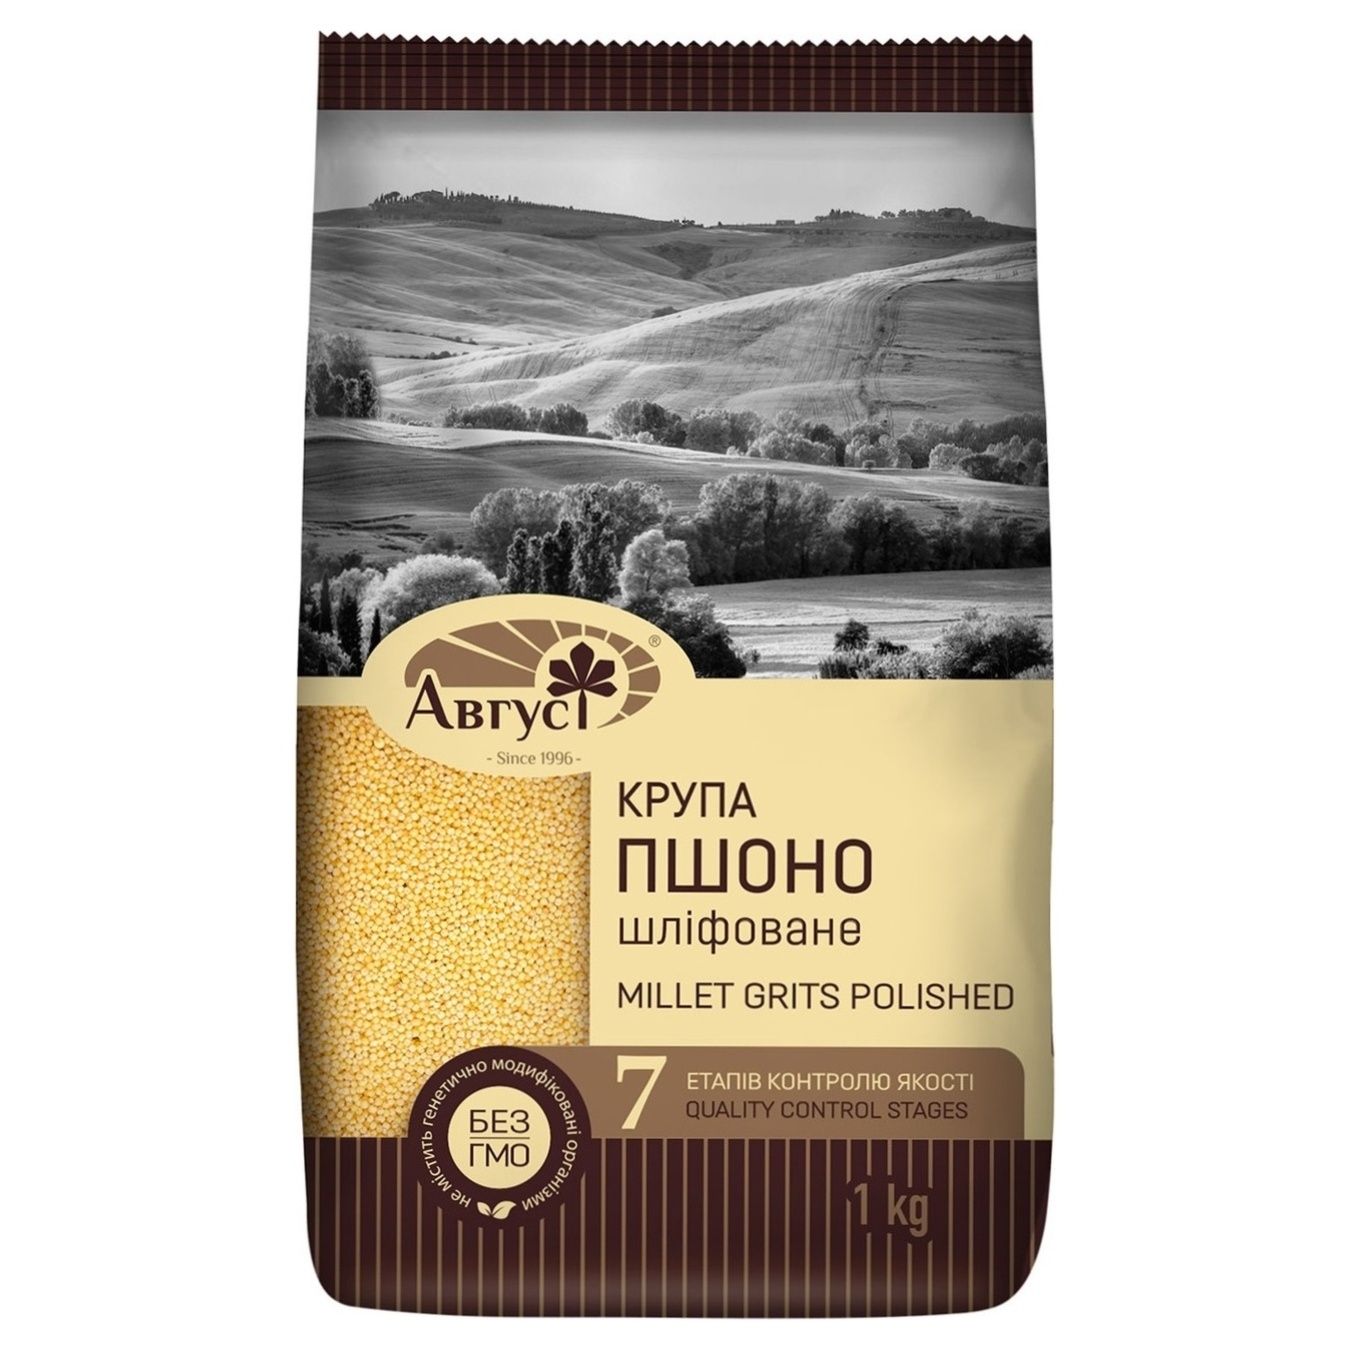 August Premium Millet Ground Groats 1kg